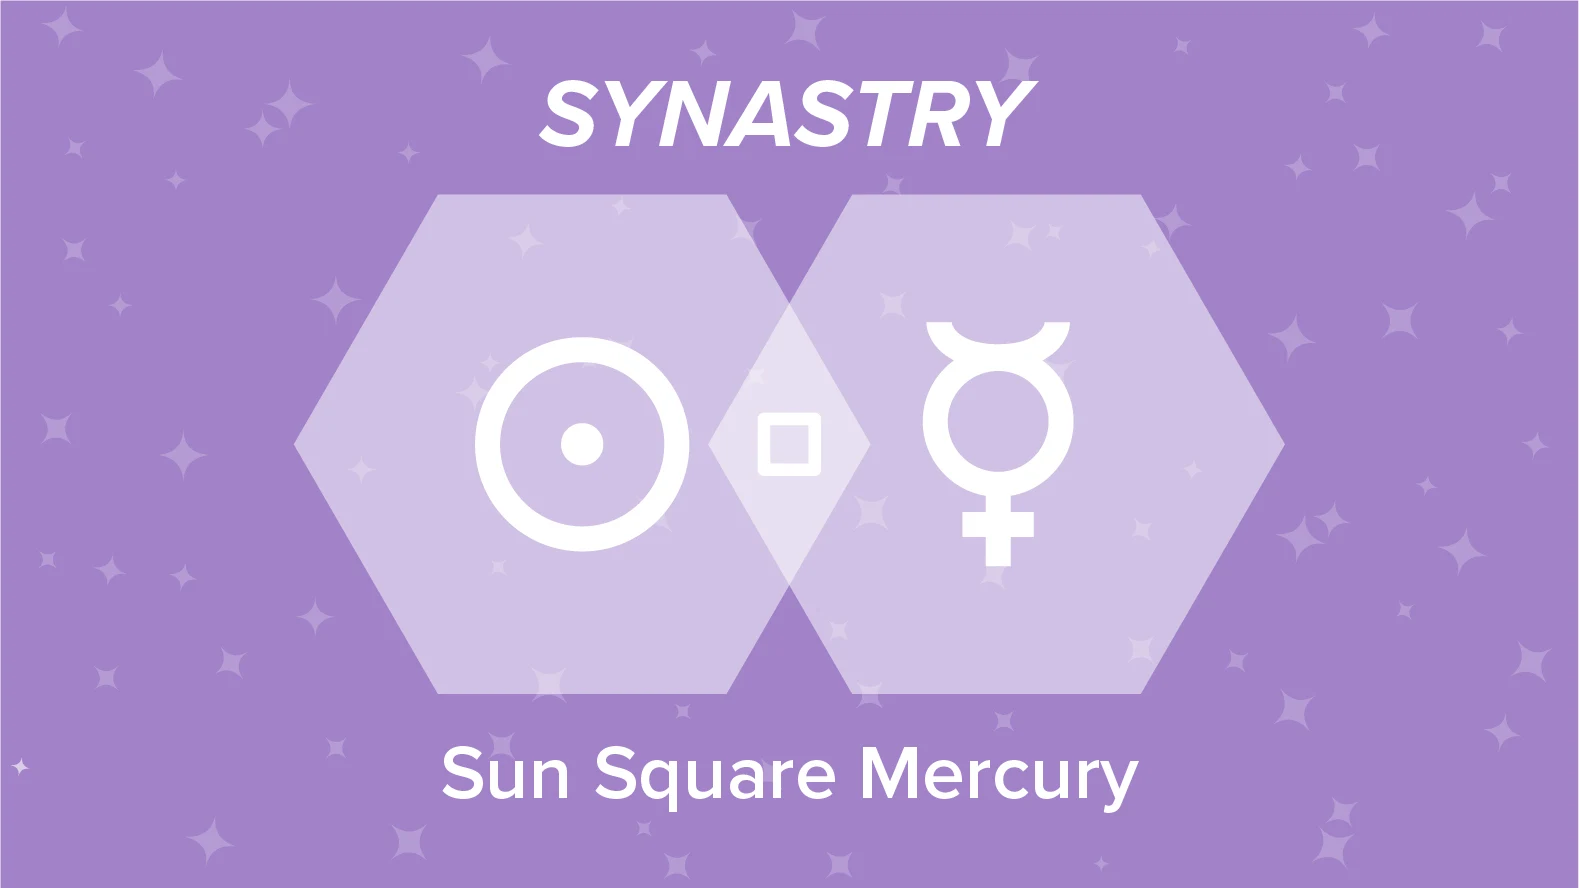 Sun Square Mercury Synastry